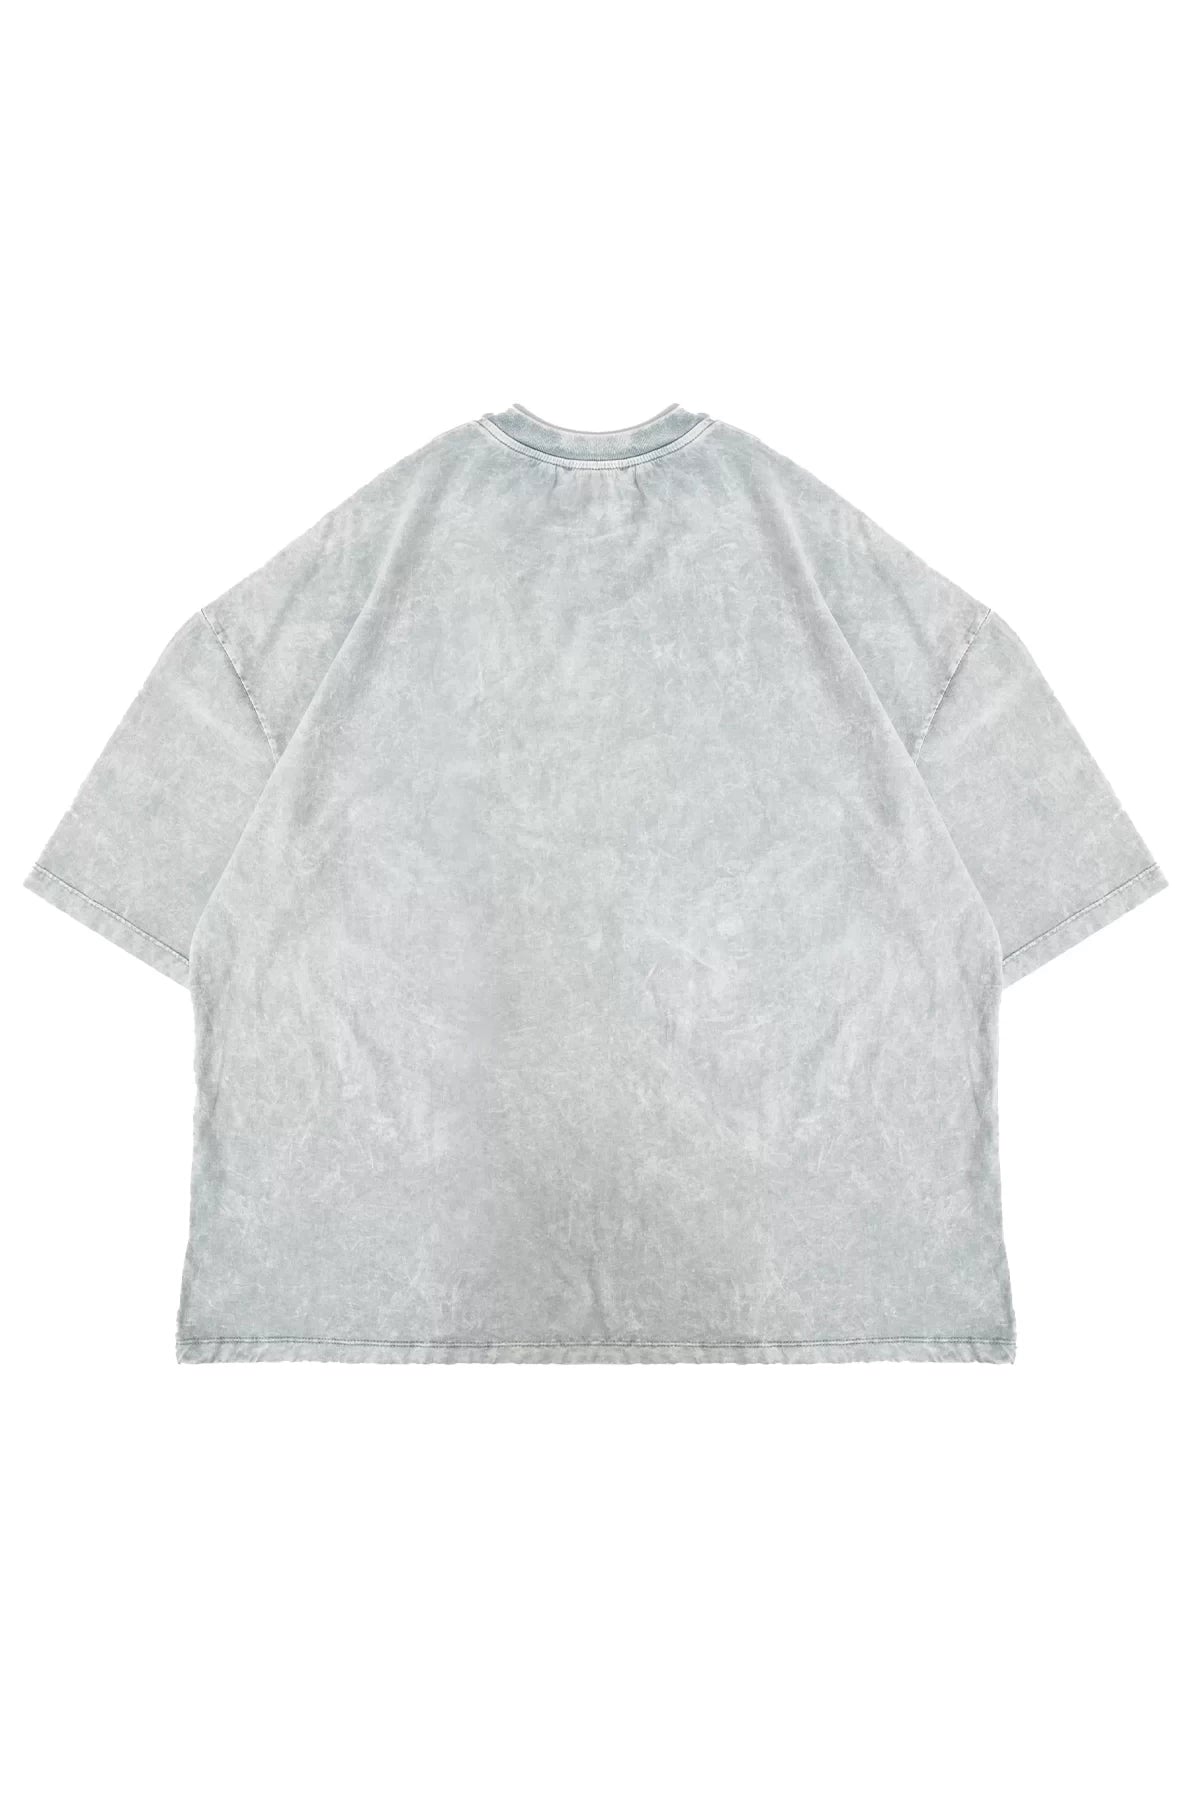 Acid wash beyaz oversize tişört - melongeneCo